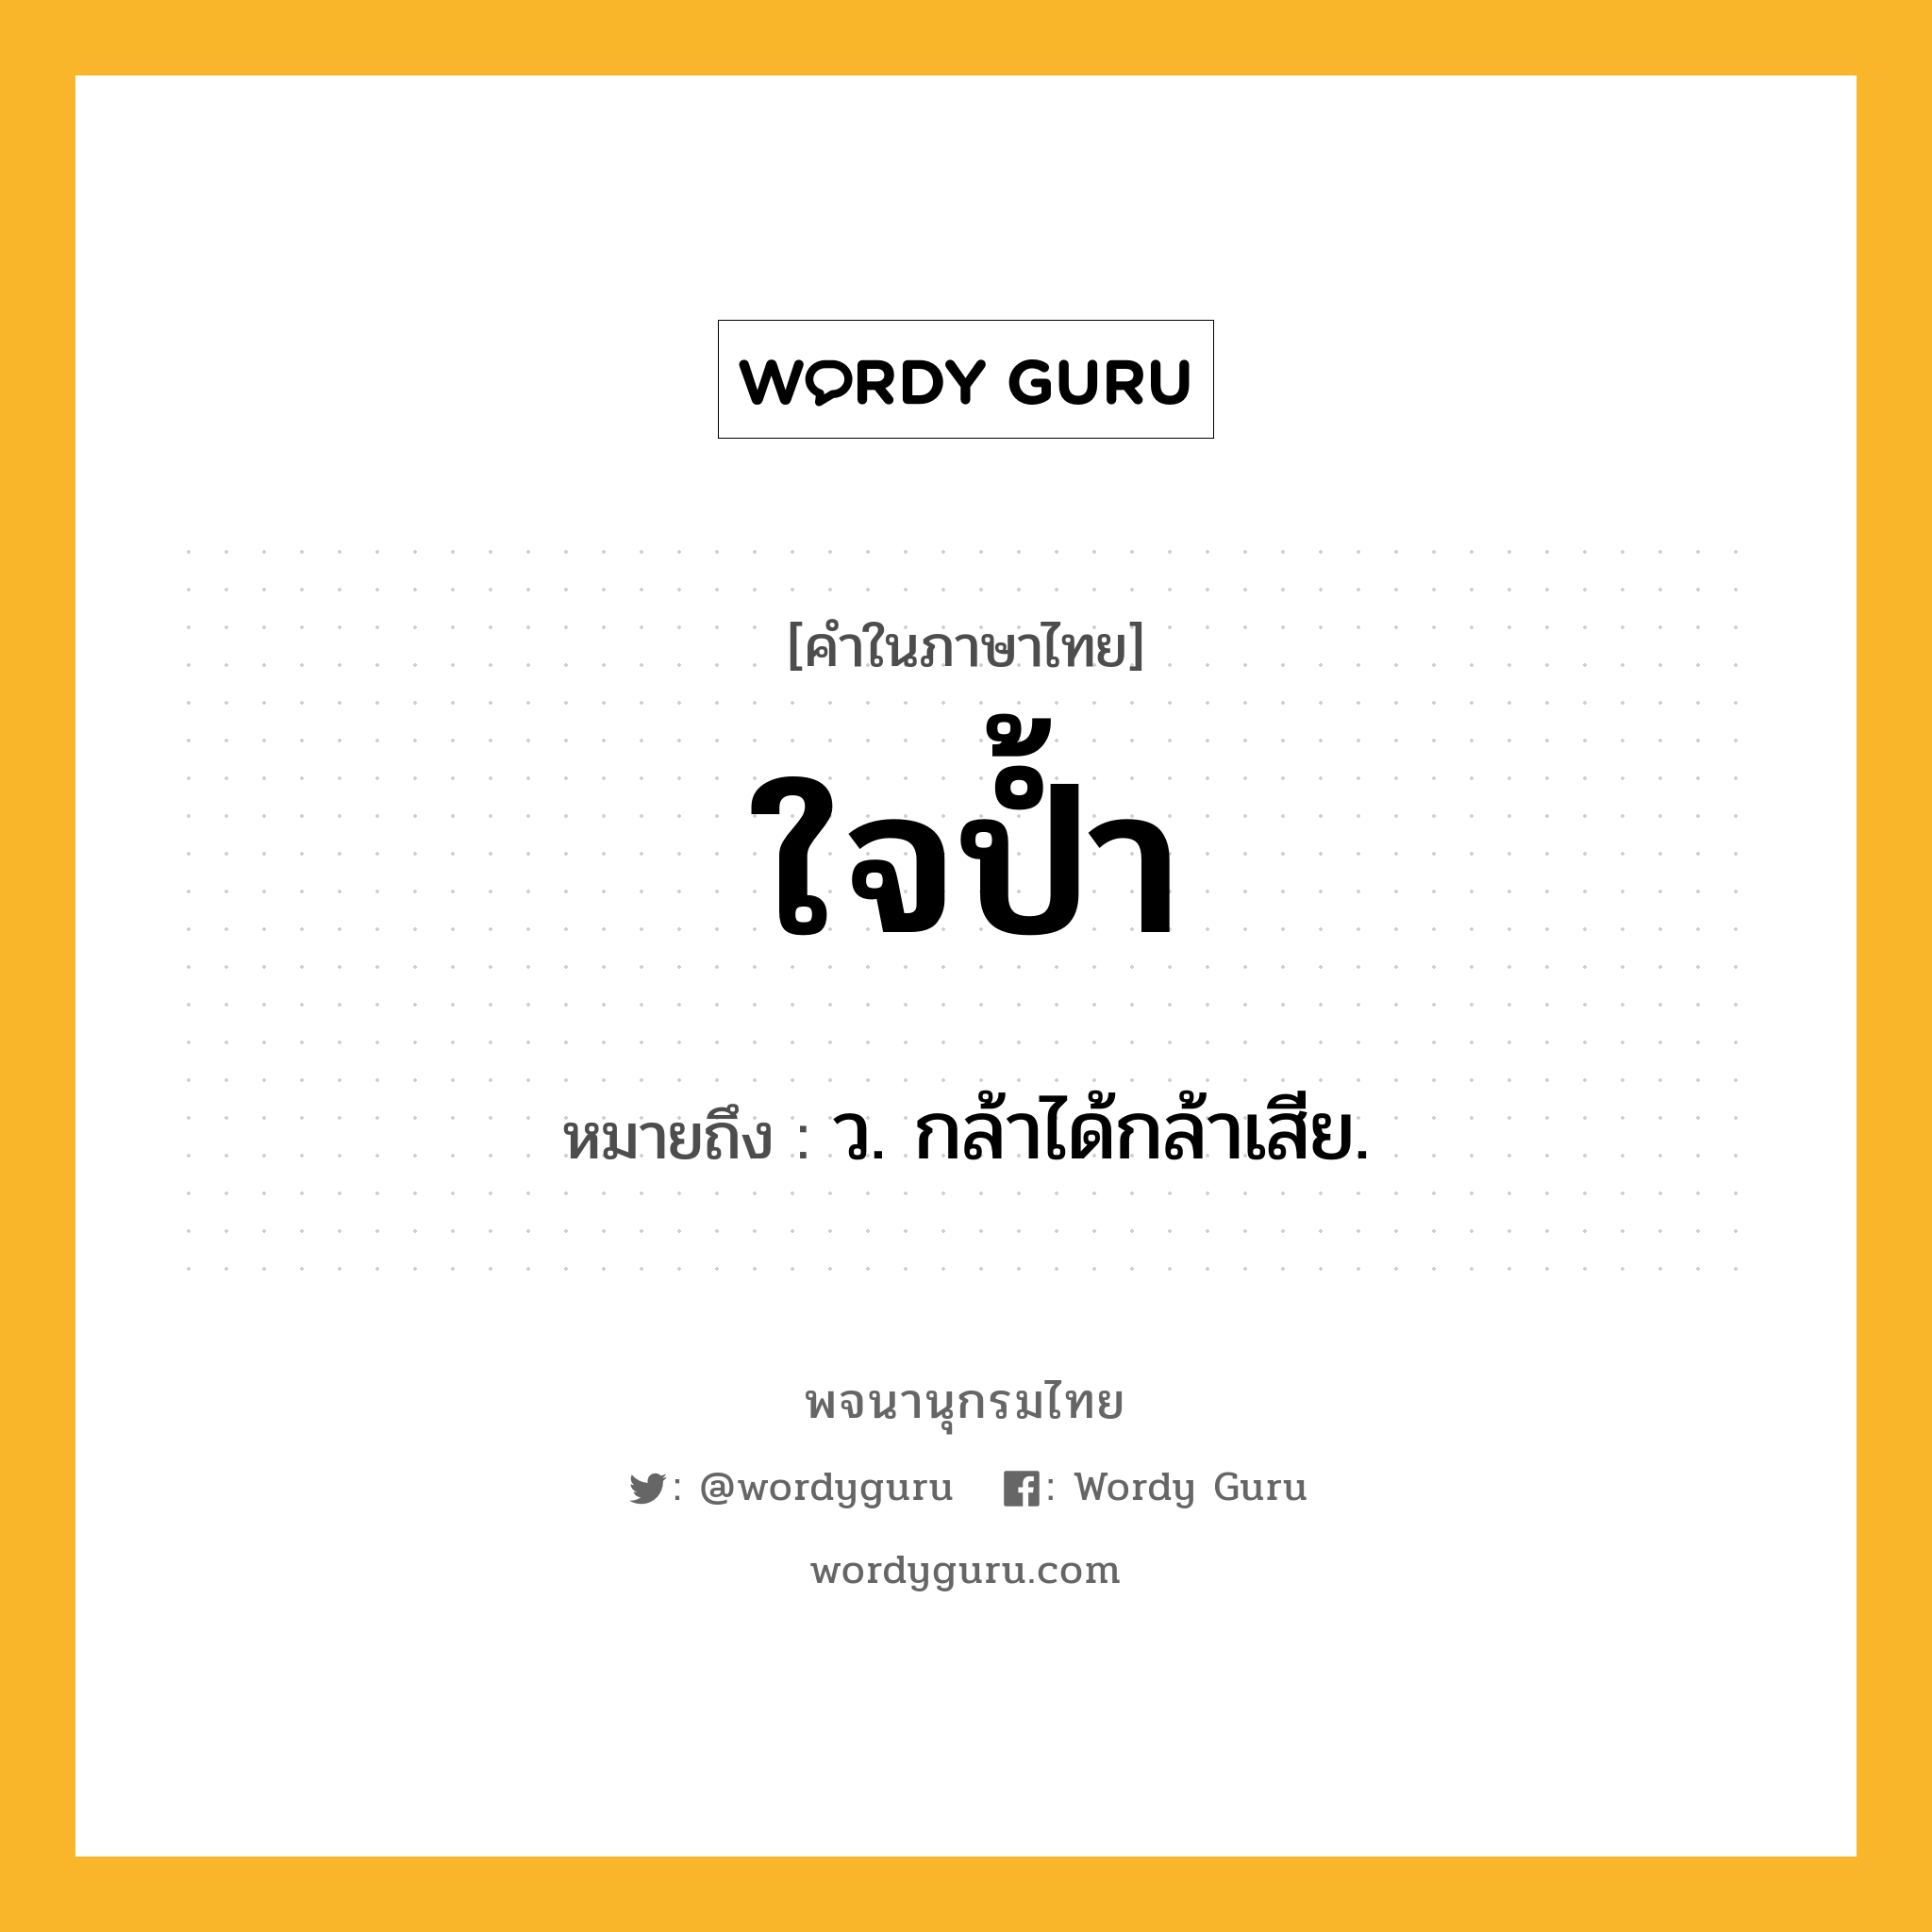 ใจป้ำ หมายถึงอะไร?, คำในภาษาไทย ใจป้ำ หมายถึง ว. กล้าได้กล้าเสีย.